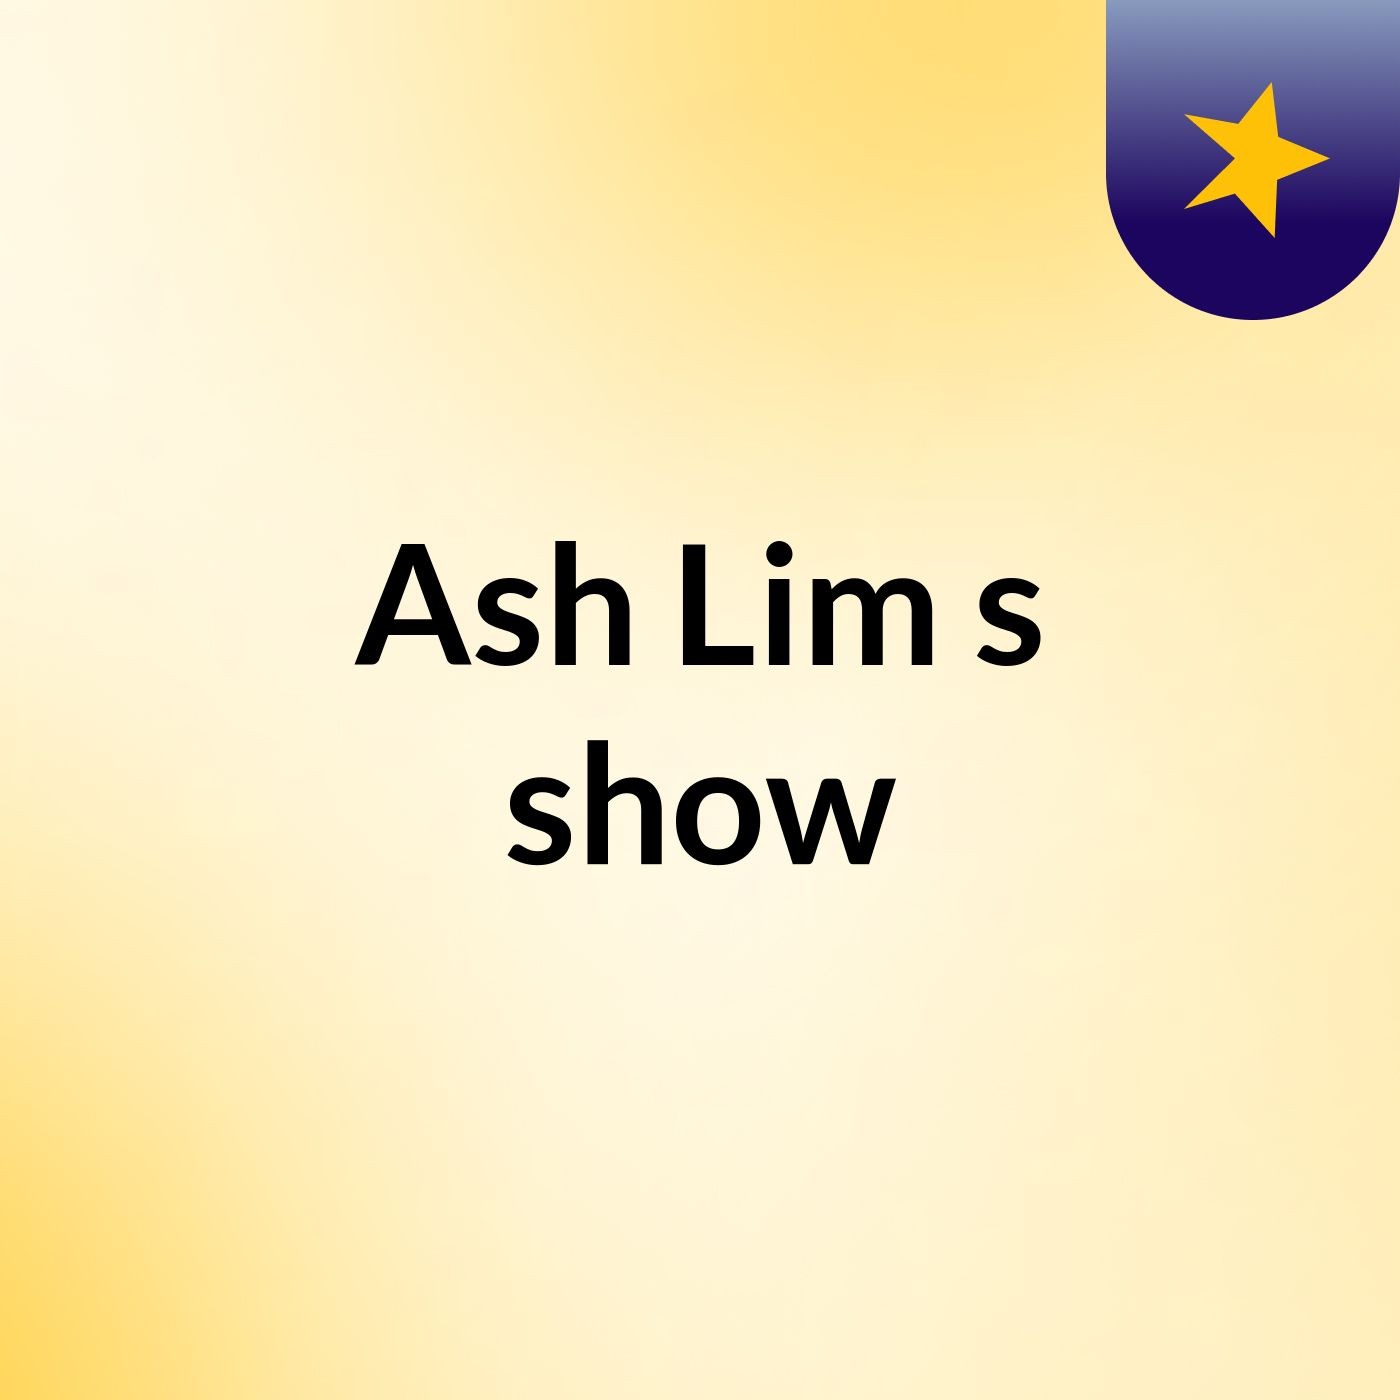 Ash Lim's show